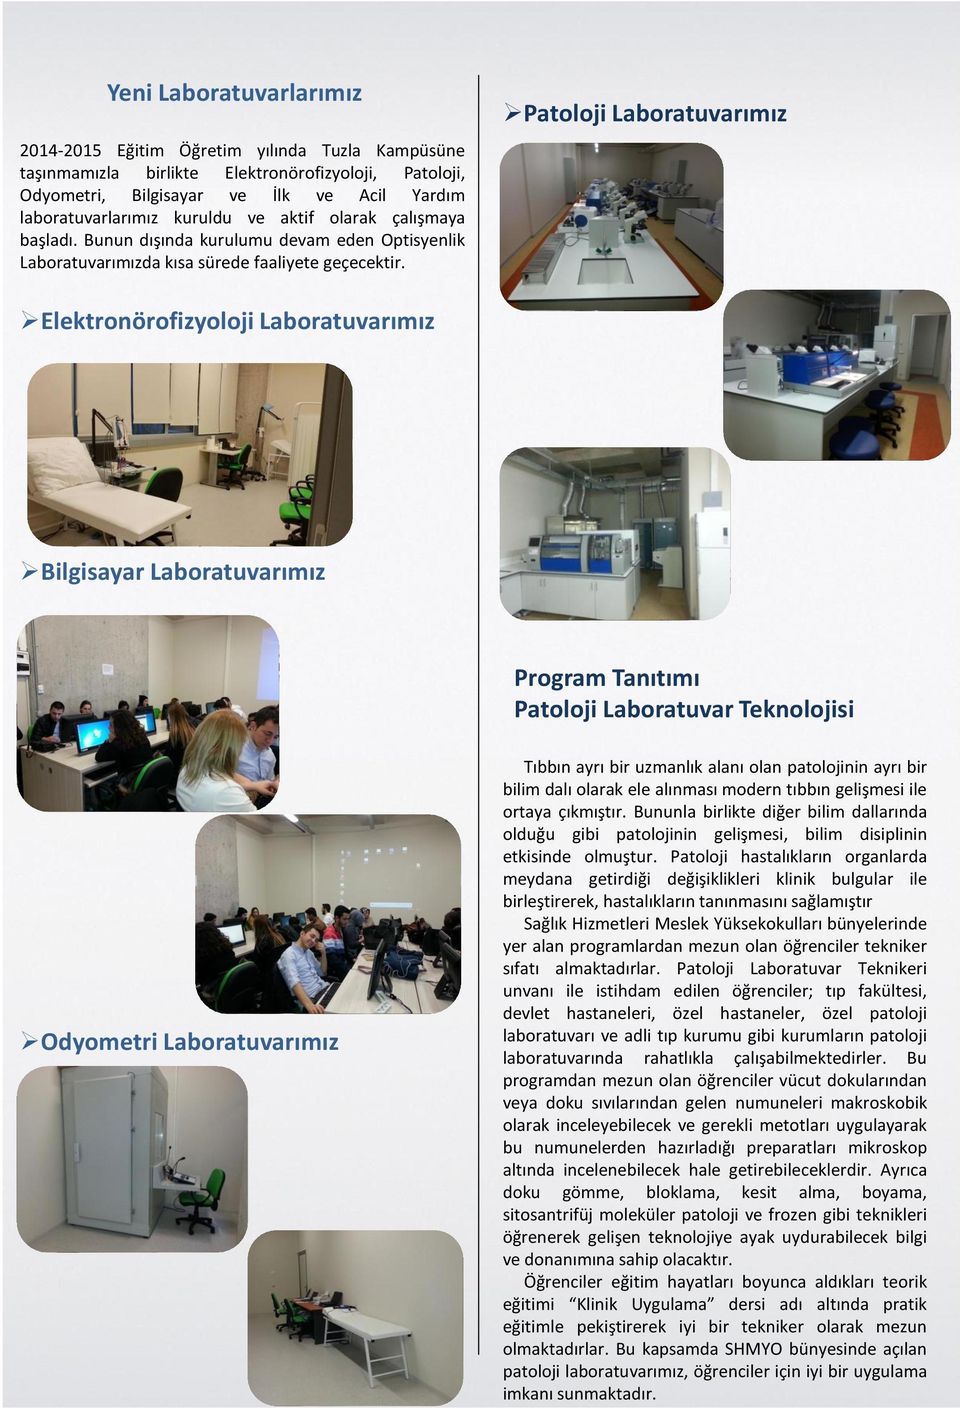 Patoloji Laboratuvarımız Elektronörofizyoloji Laboratuvarımız Bilgisayar Laboratuvarımız Program Tanıtımı Patoloji Laboratuvar Teknolojisi Odyometri Laboratuvarımız Tıbbın ayrı bir uzmanlık alanı